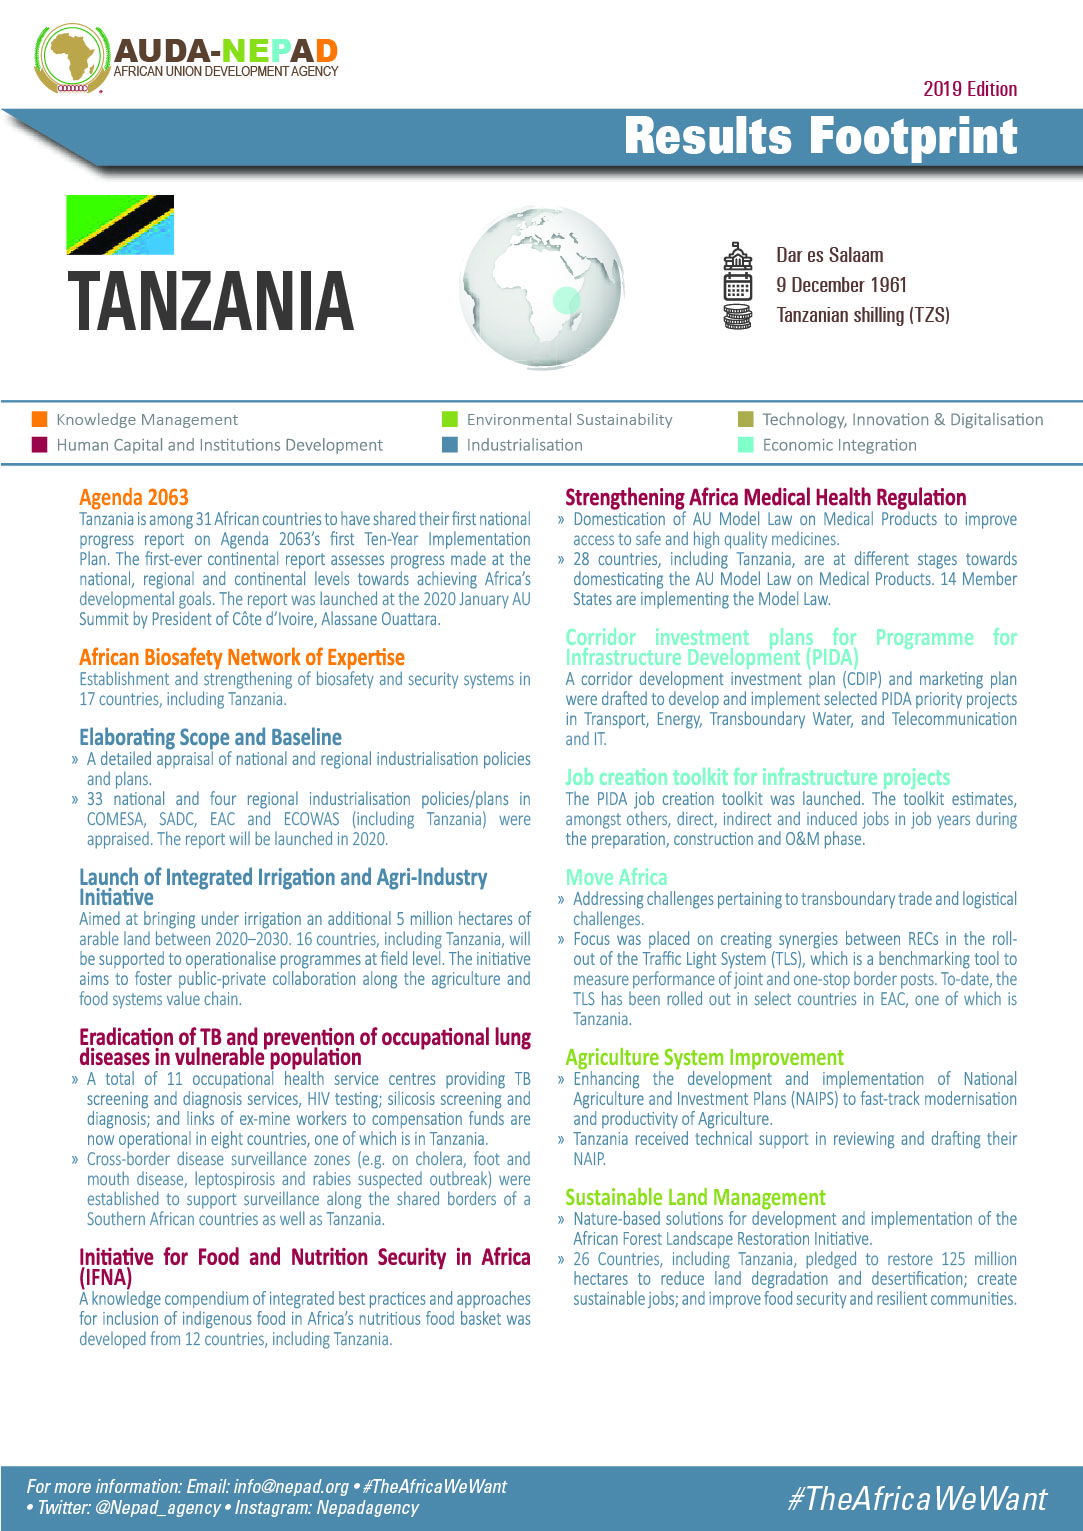 2019 AUDA-NEPAD Footprint: Country Profiles: Tanzania